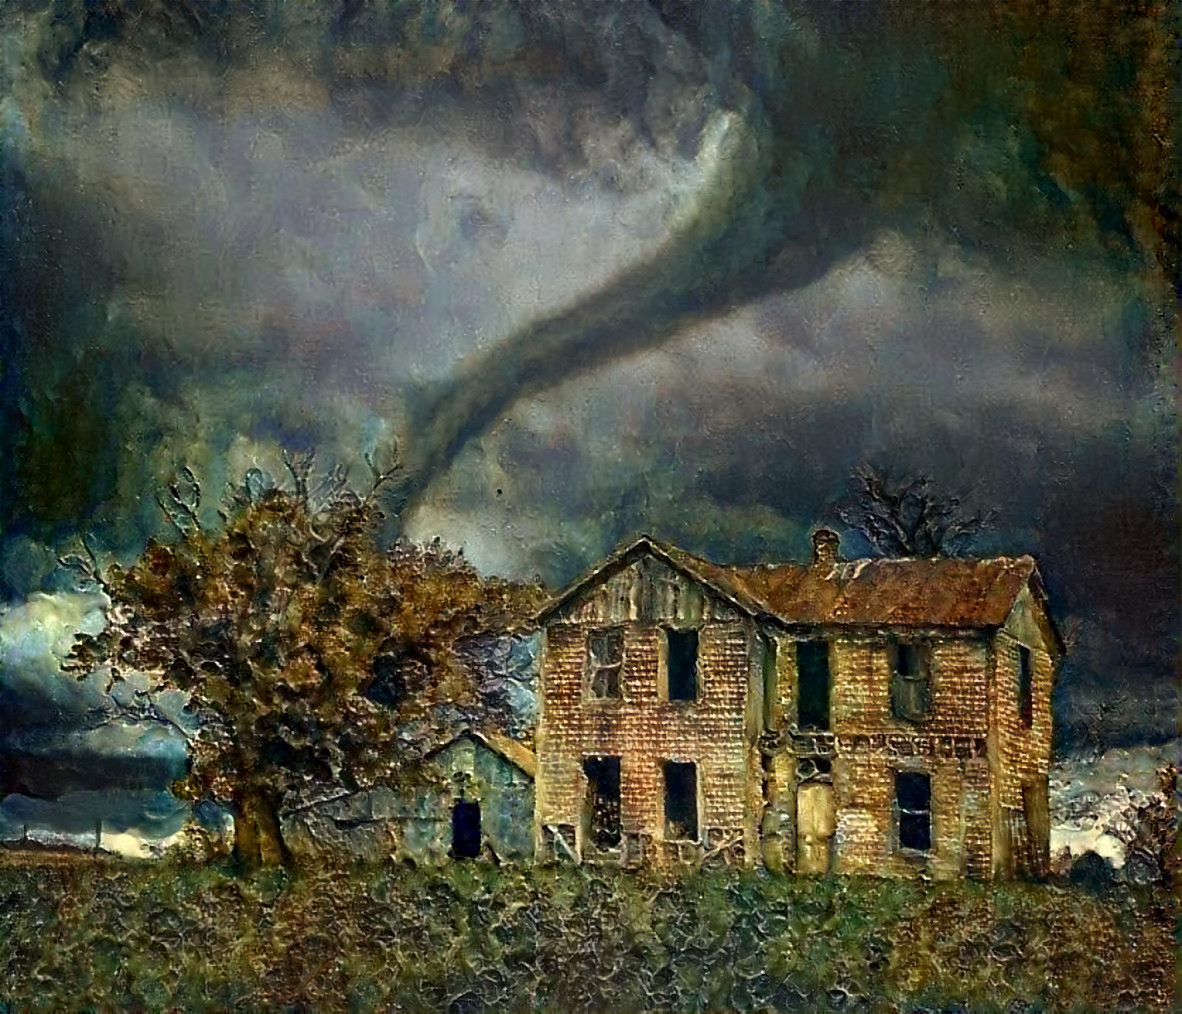 It's Tornado Season Here in Kansas